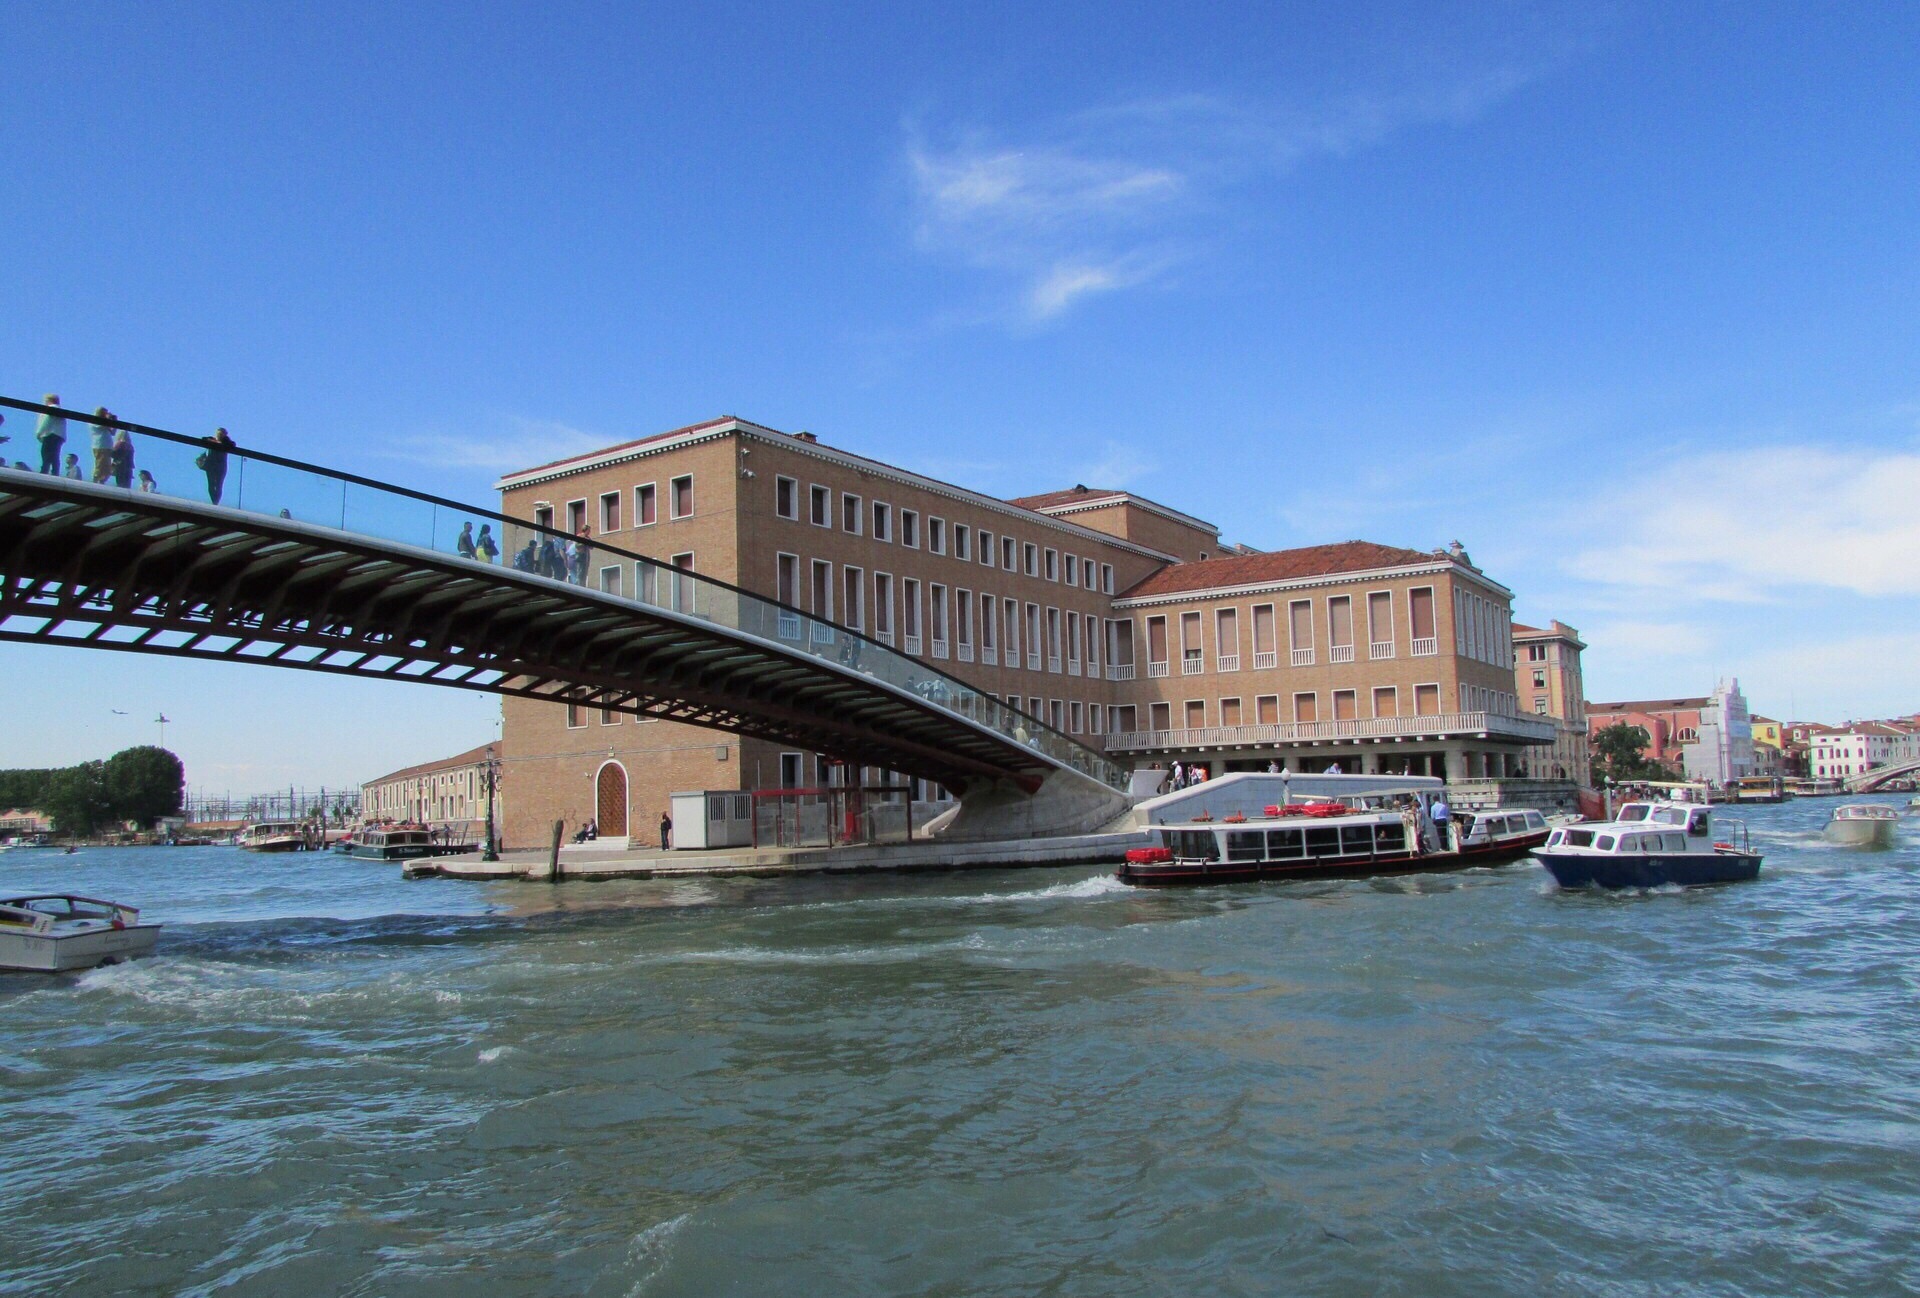 【携程攻略】威尼斯里亚托桥景点,来威尼斯的愿望之一就是看这座桥，曾经读过莎士比亚《威尼斯商人》的…